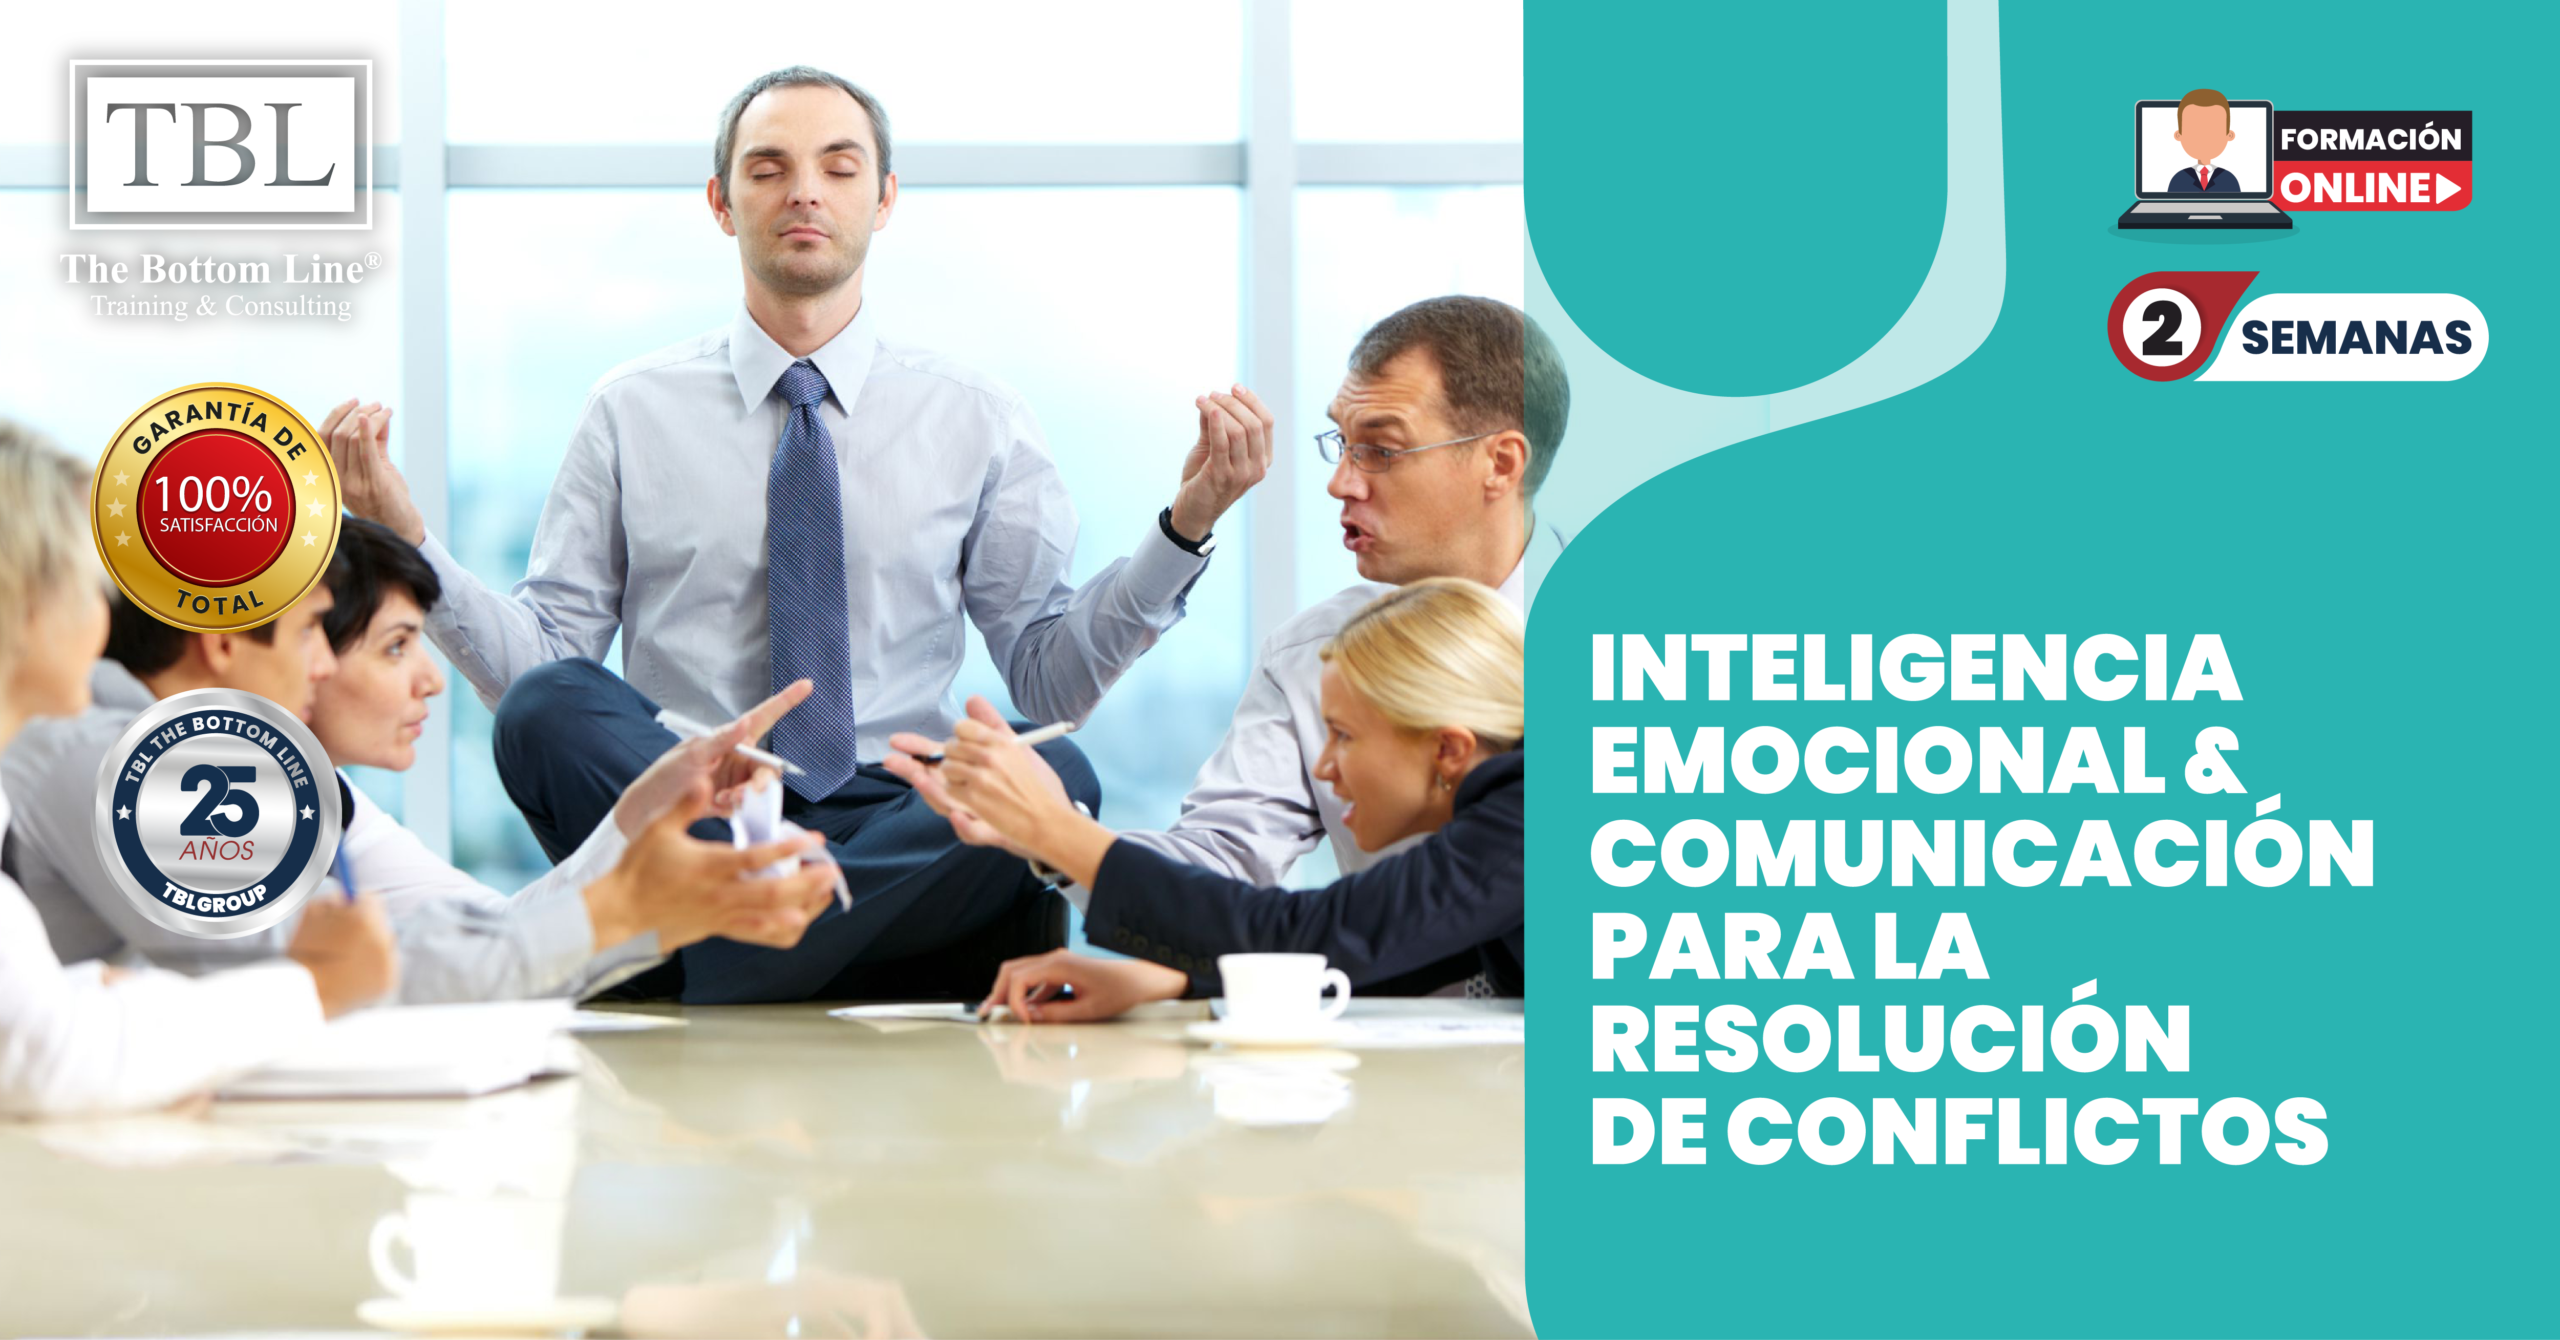 Inteligencia Emocional & Comunicación para la Resolución de Conflictos